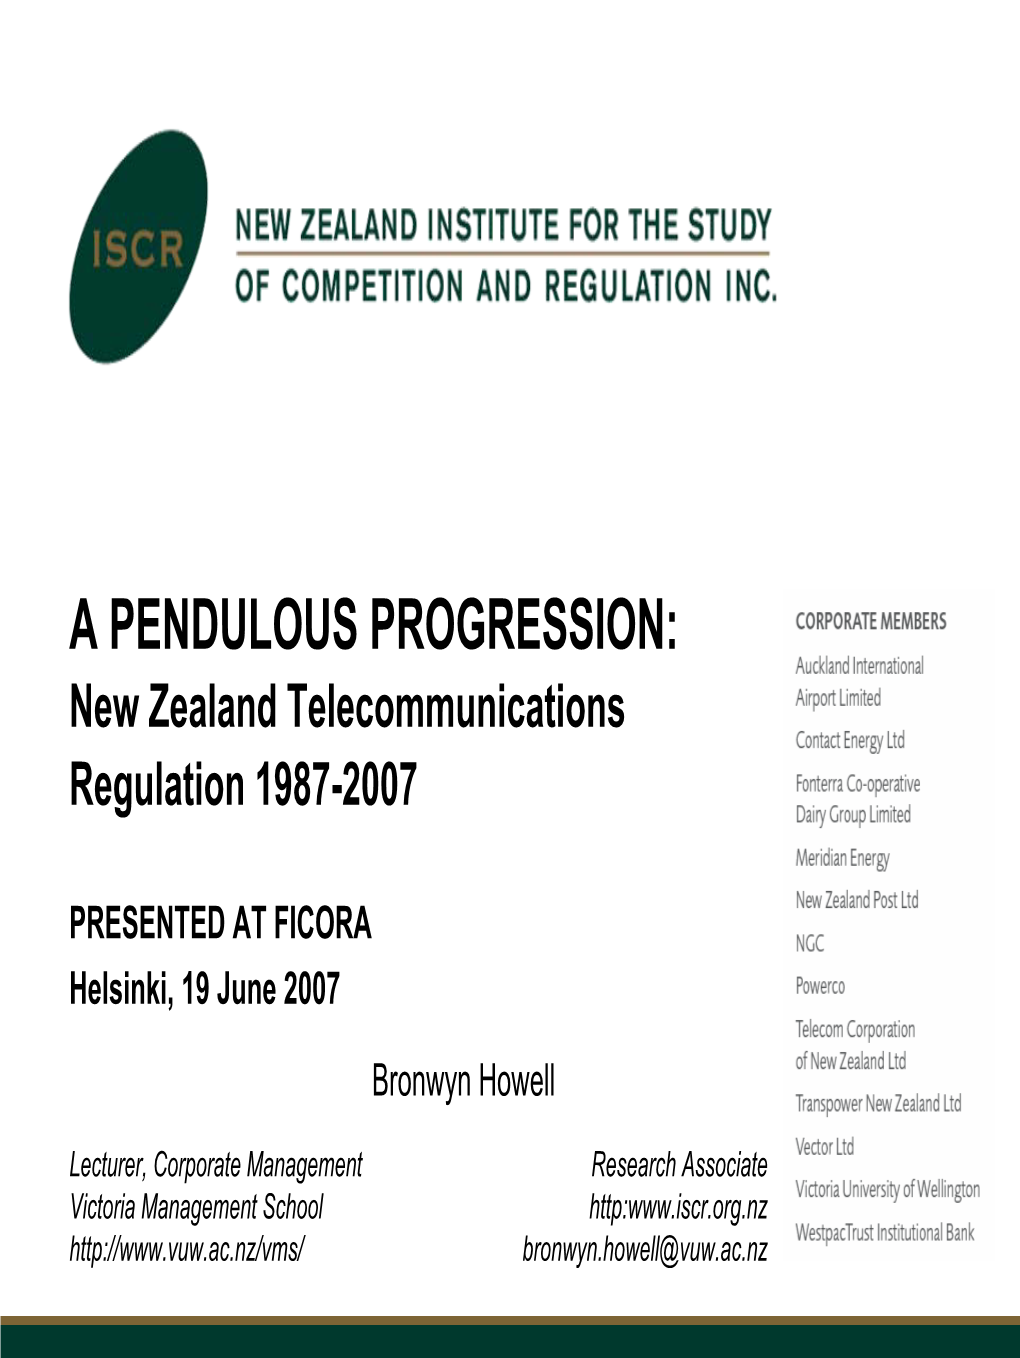 New Zealand Telecommunications Regulation 1987-2007